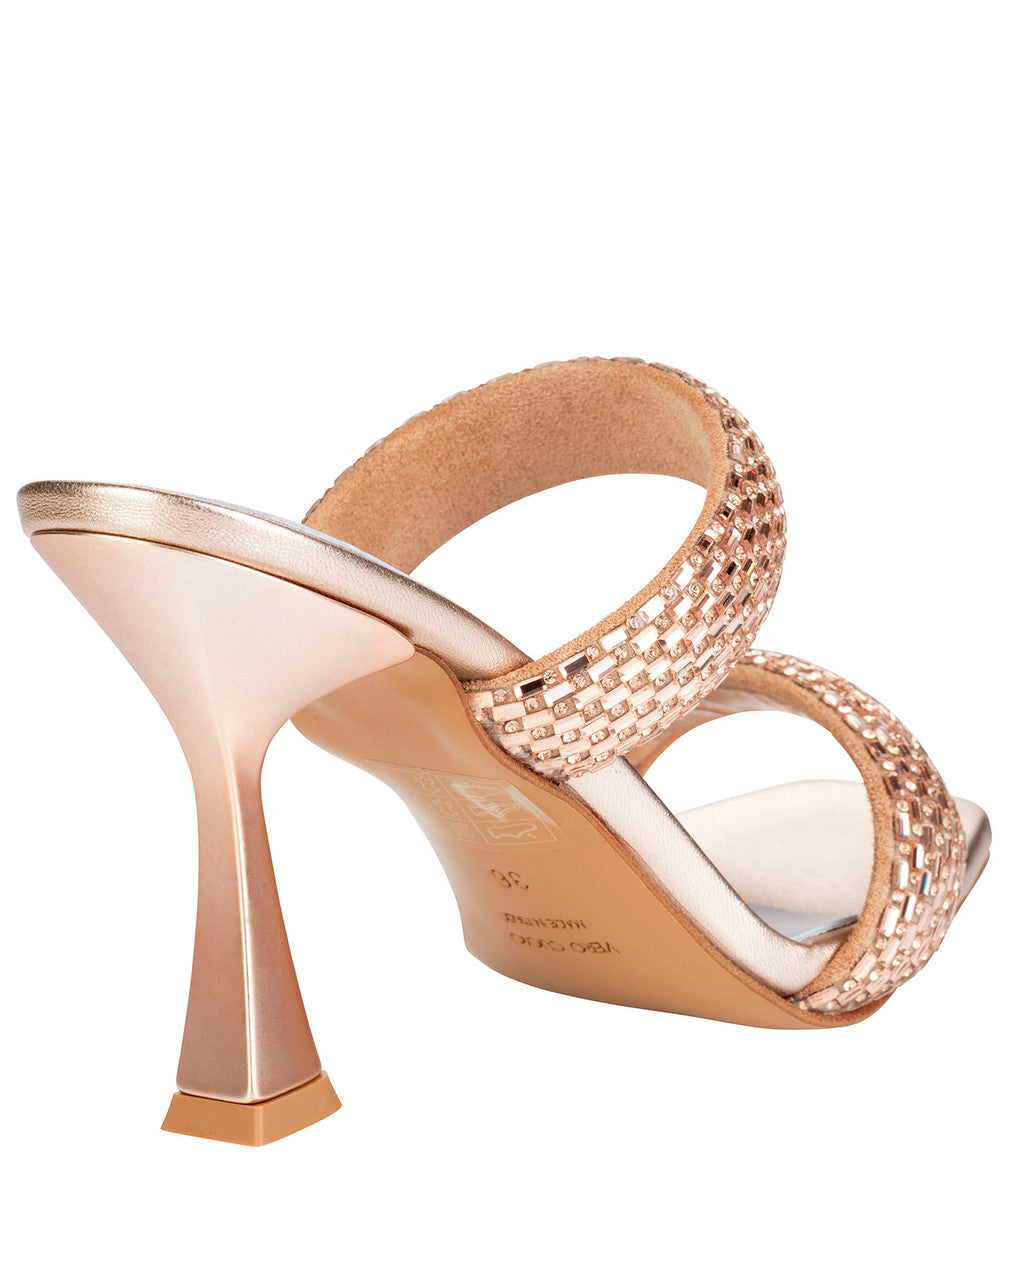 Bianca Buccheri Fiorella Copper Sandals